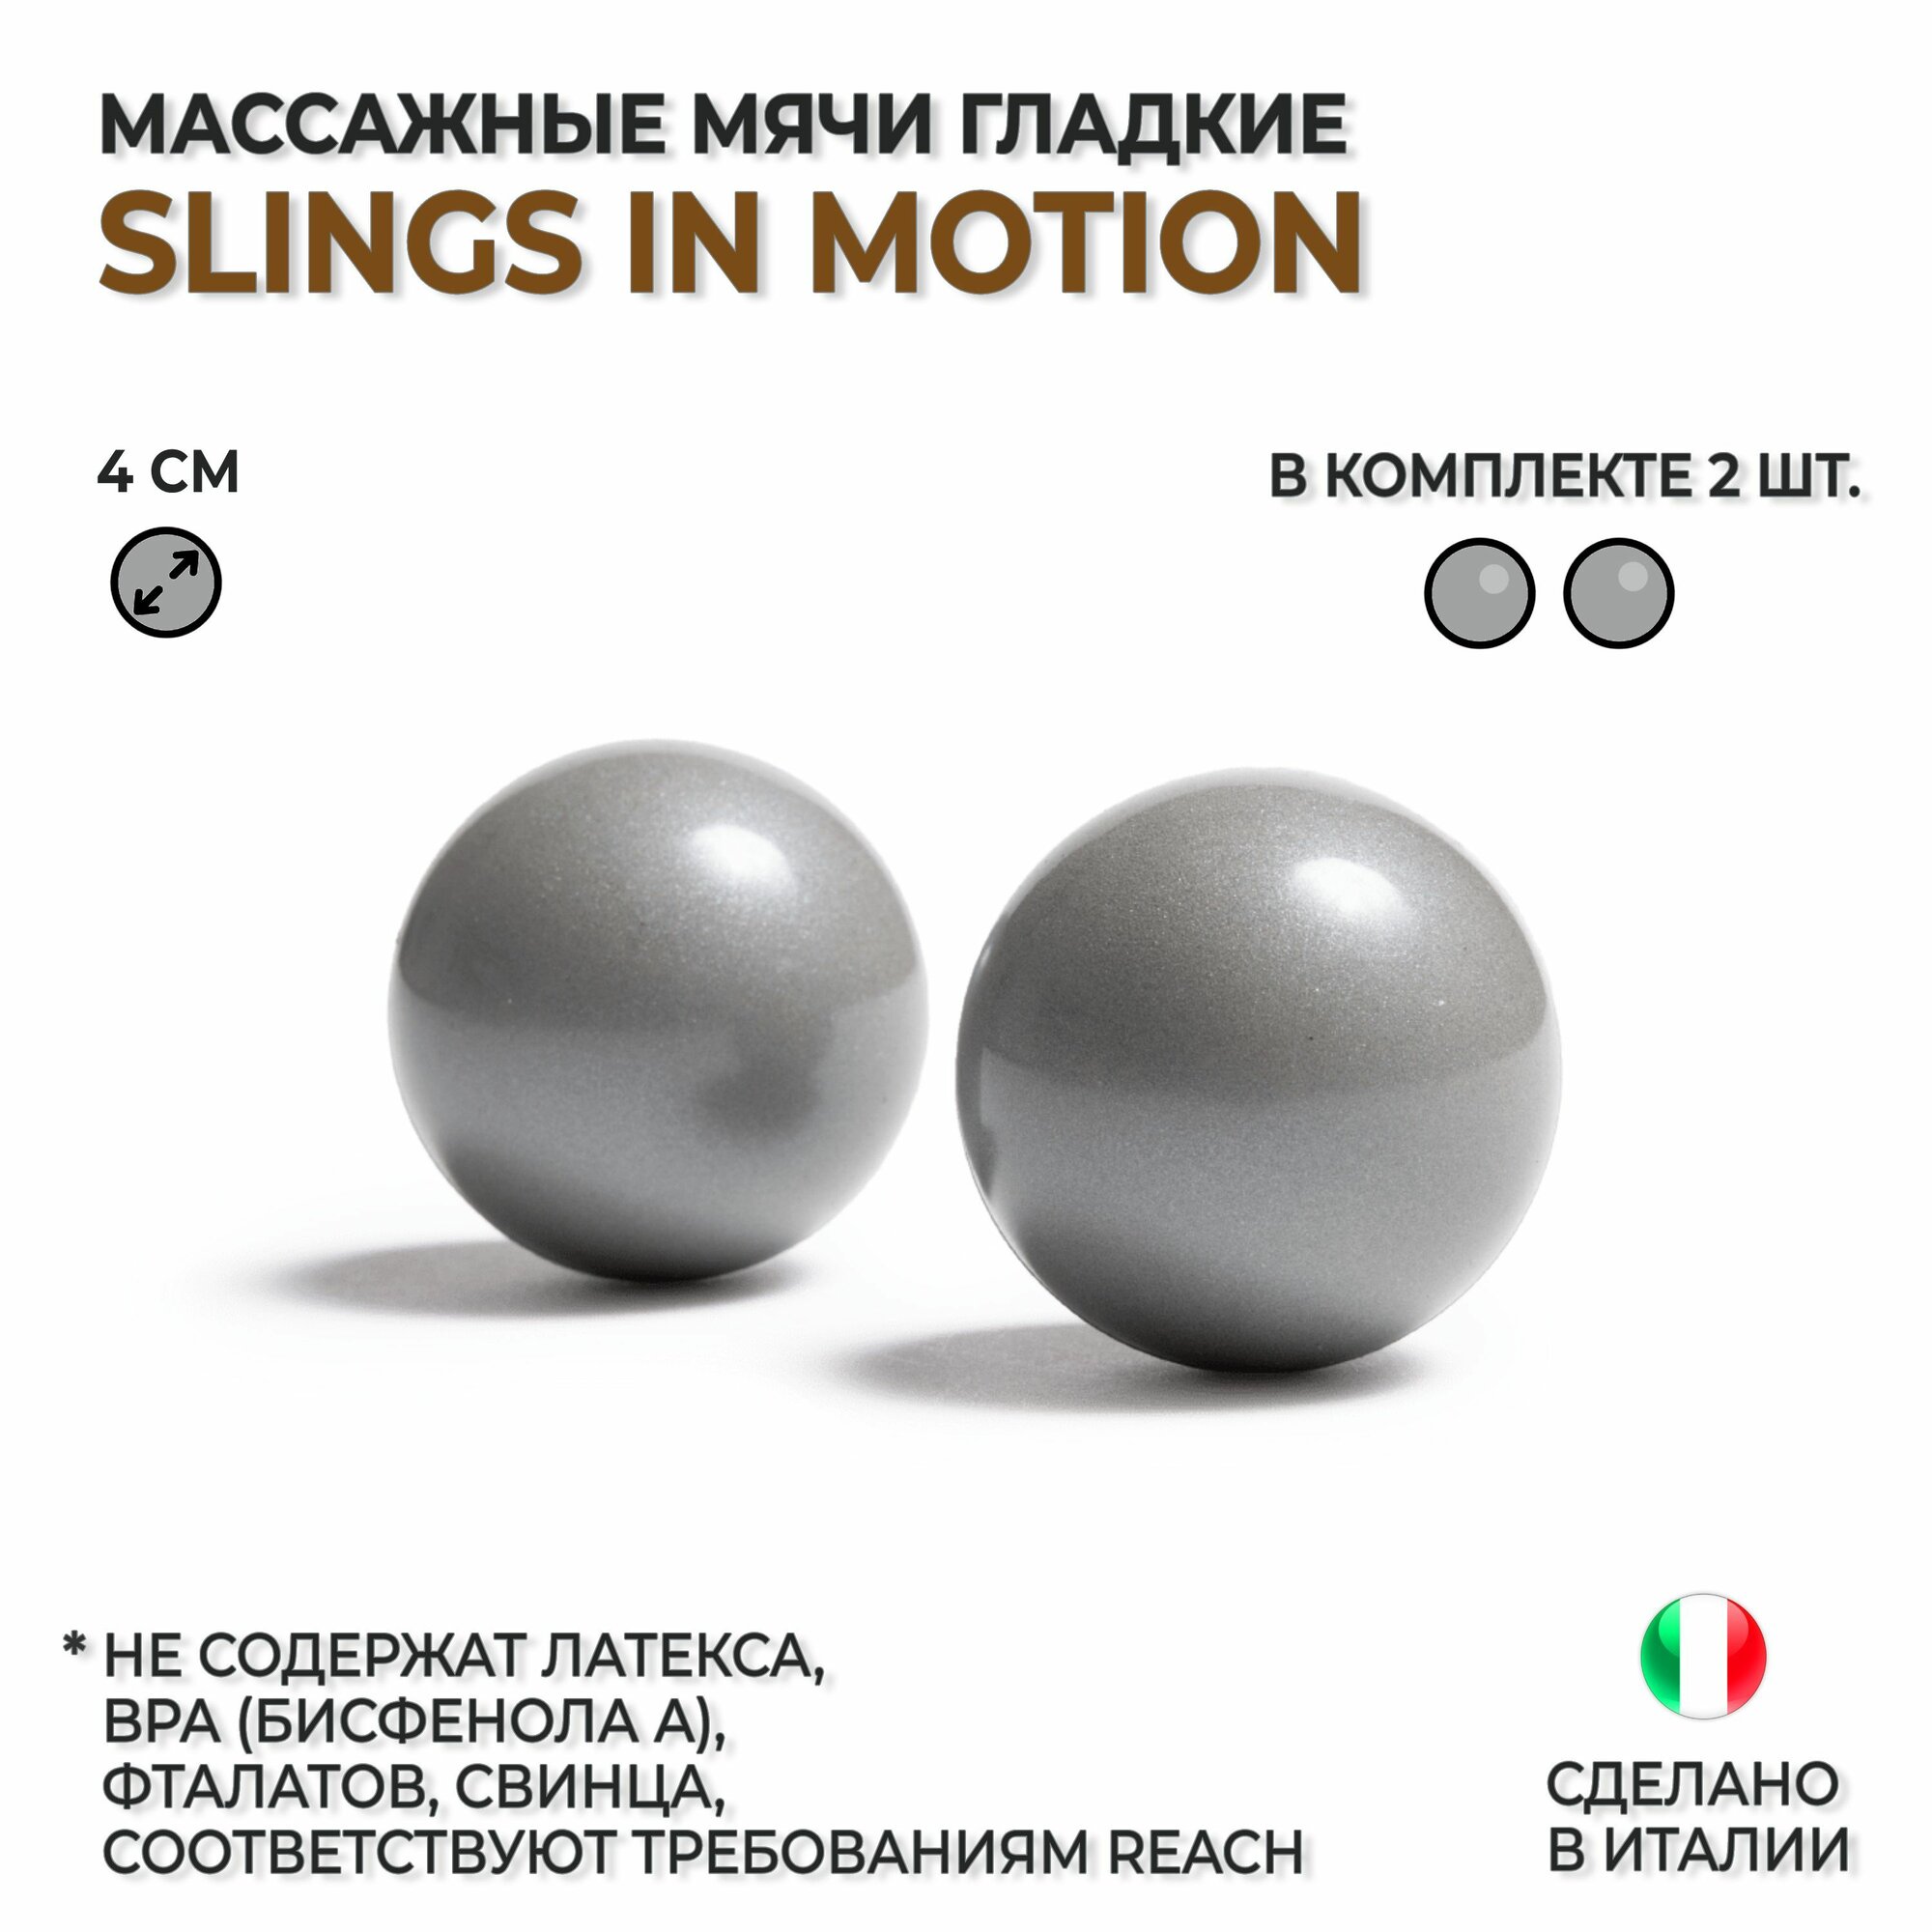 Мячи массажные гладкие для МФР массажа SLINGS IN MOTION "Слинги в движении", комплект из 2 шт.